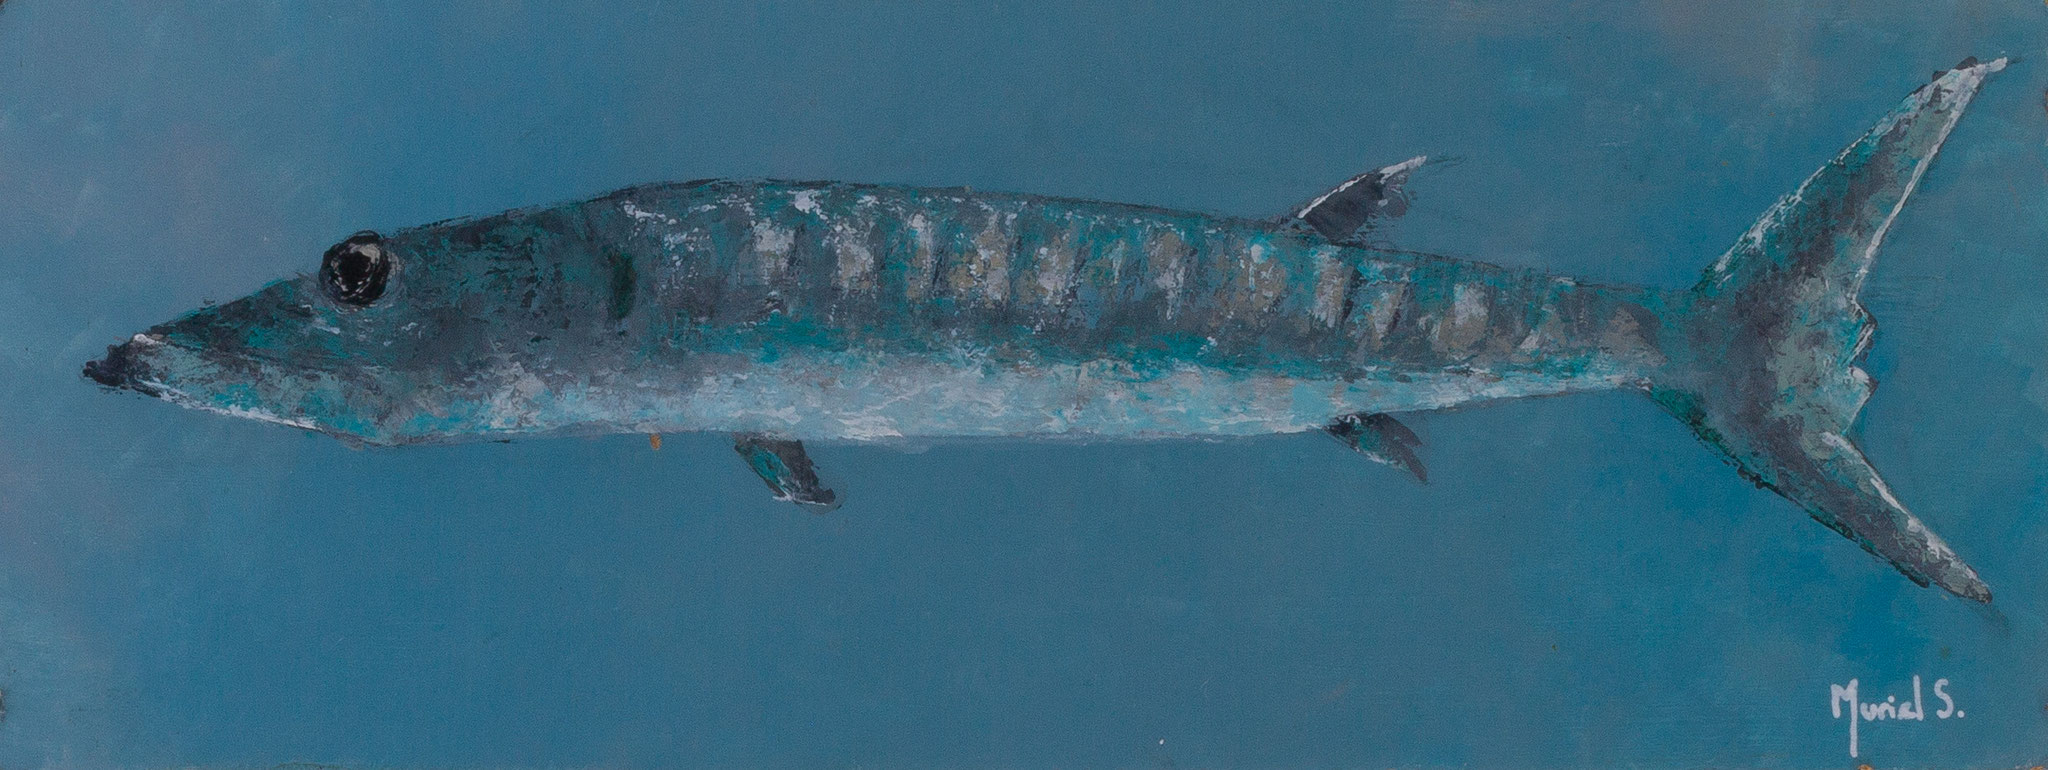 Barracuda, acrylique sur toile, 30x60, 2015